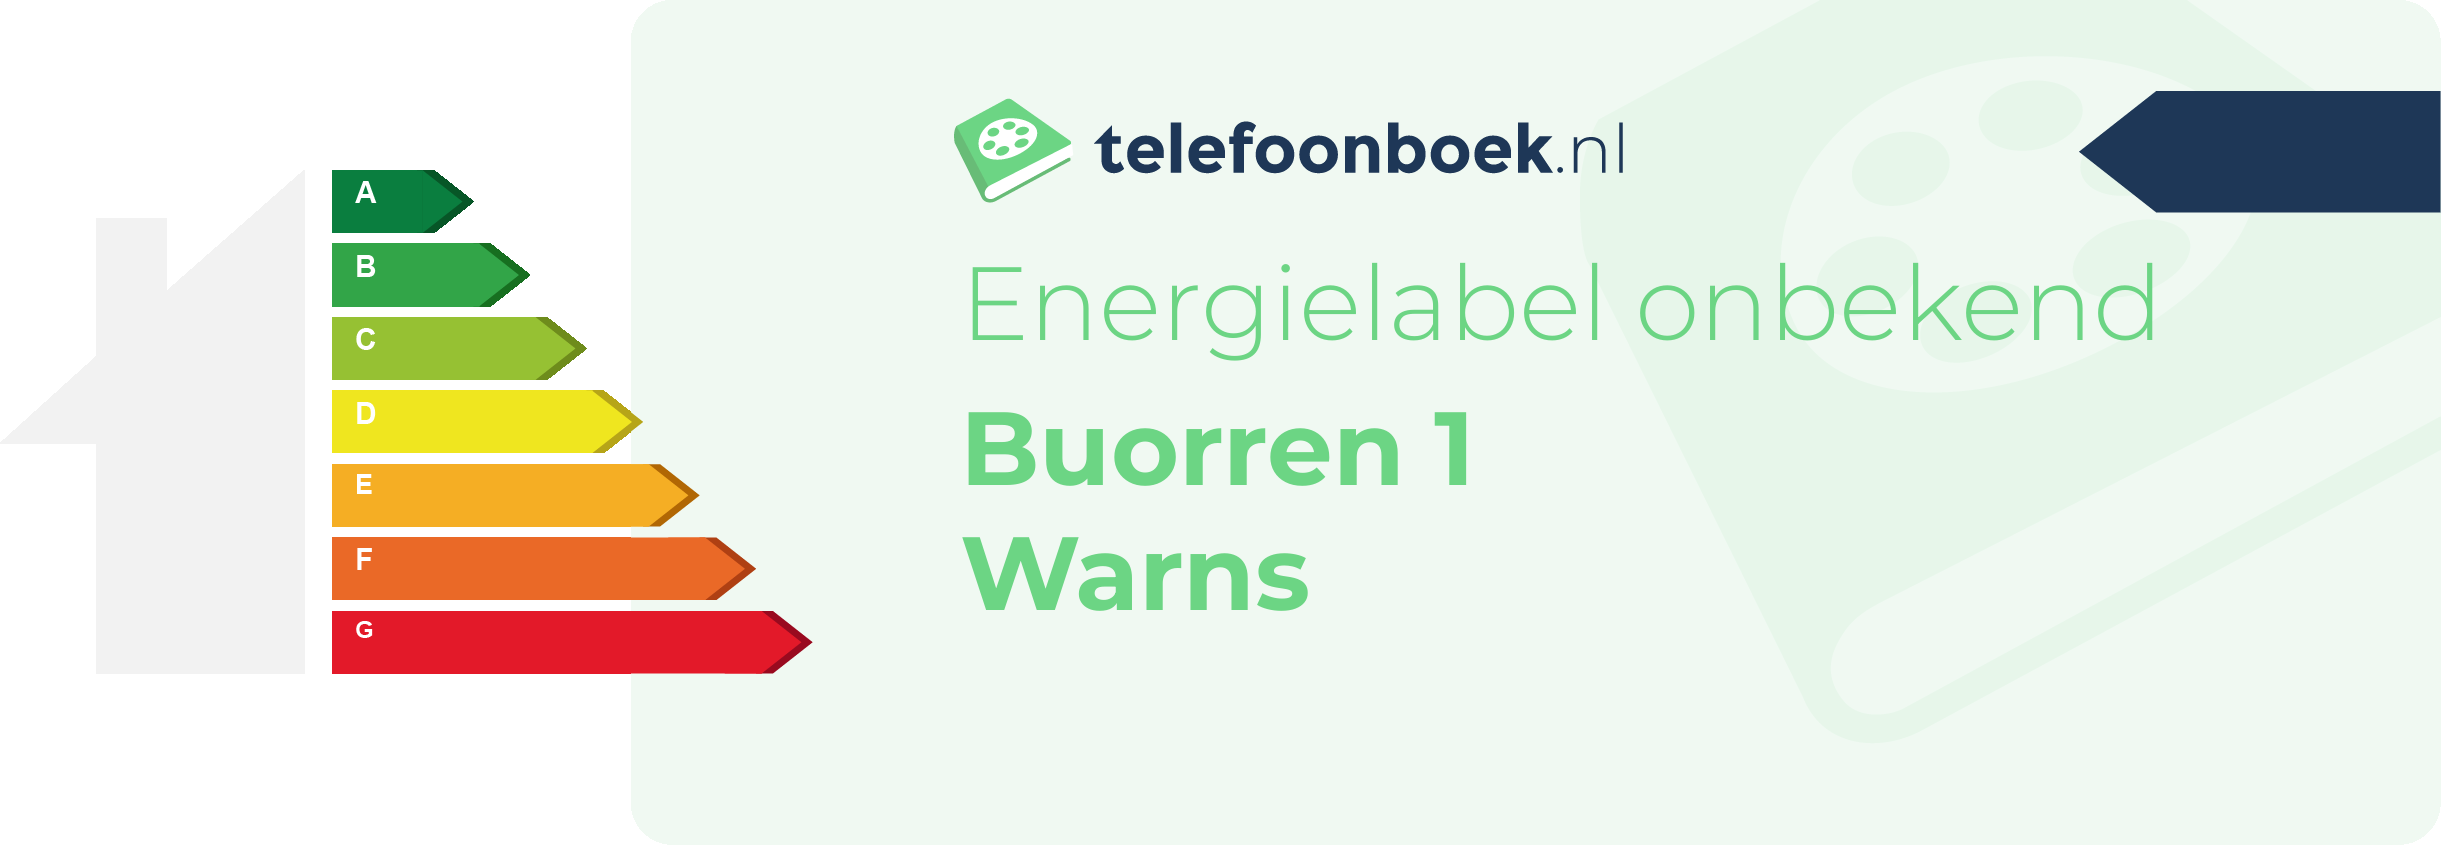 Energielabel Buorren 1 Warns